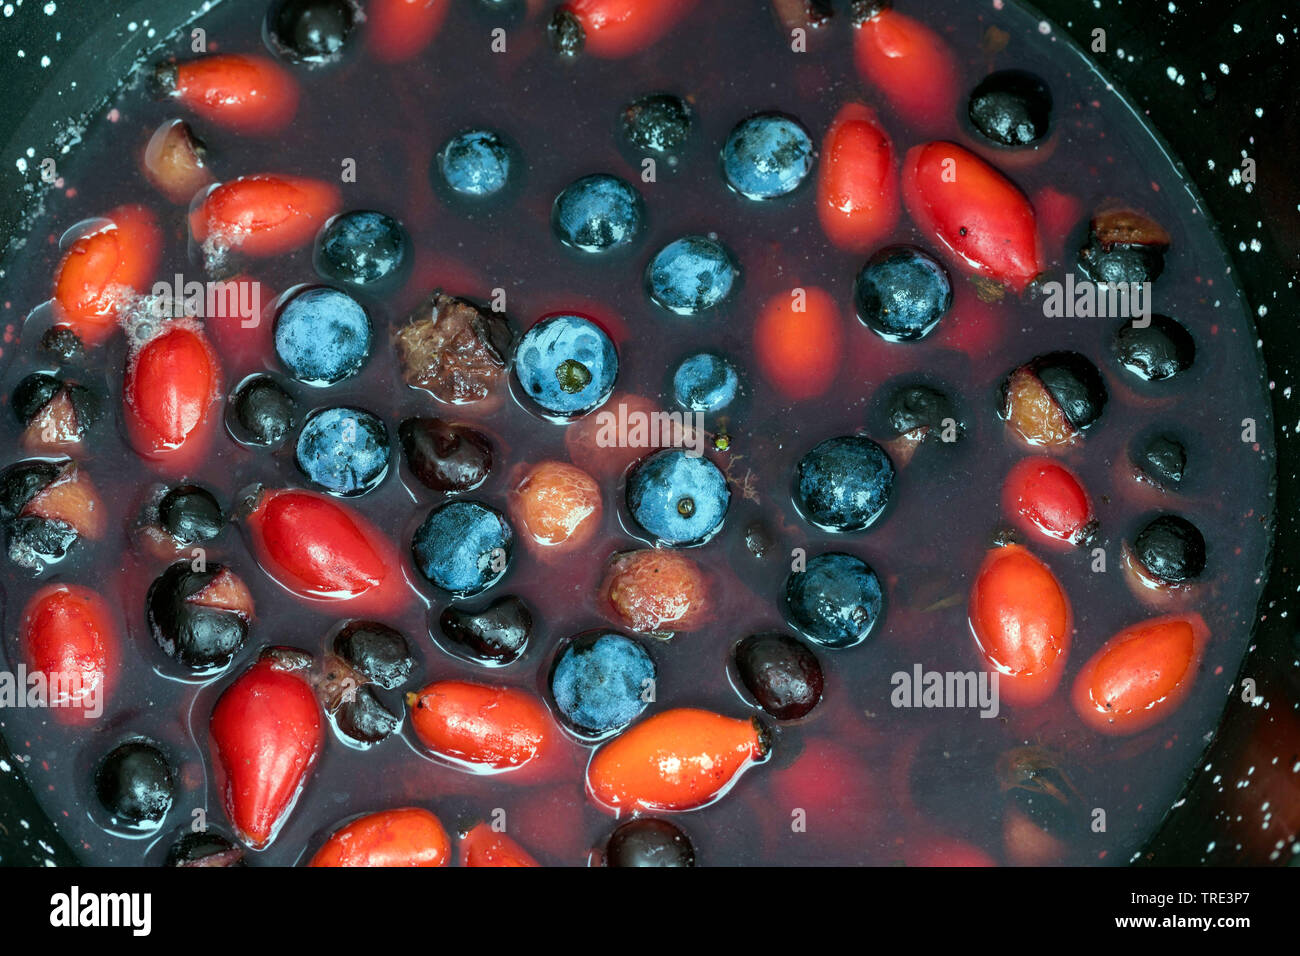 Blackthorn, Schlehe (Prunus spinosa), gesammelte Früchte von blackthorn und Hagebutten in einen Durchschlag, Deutschland Stockfoto